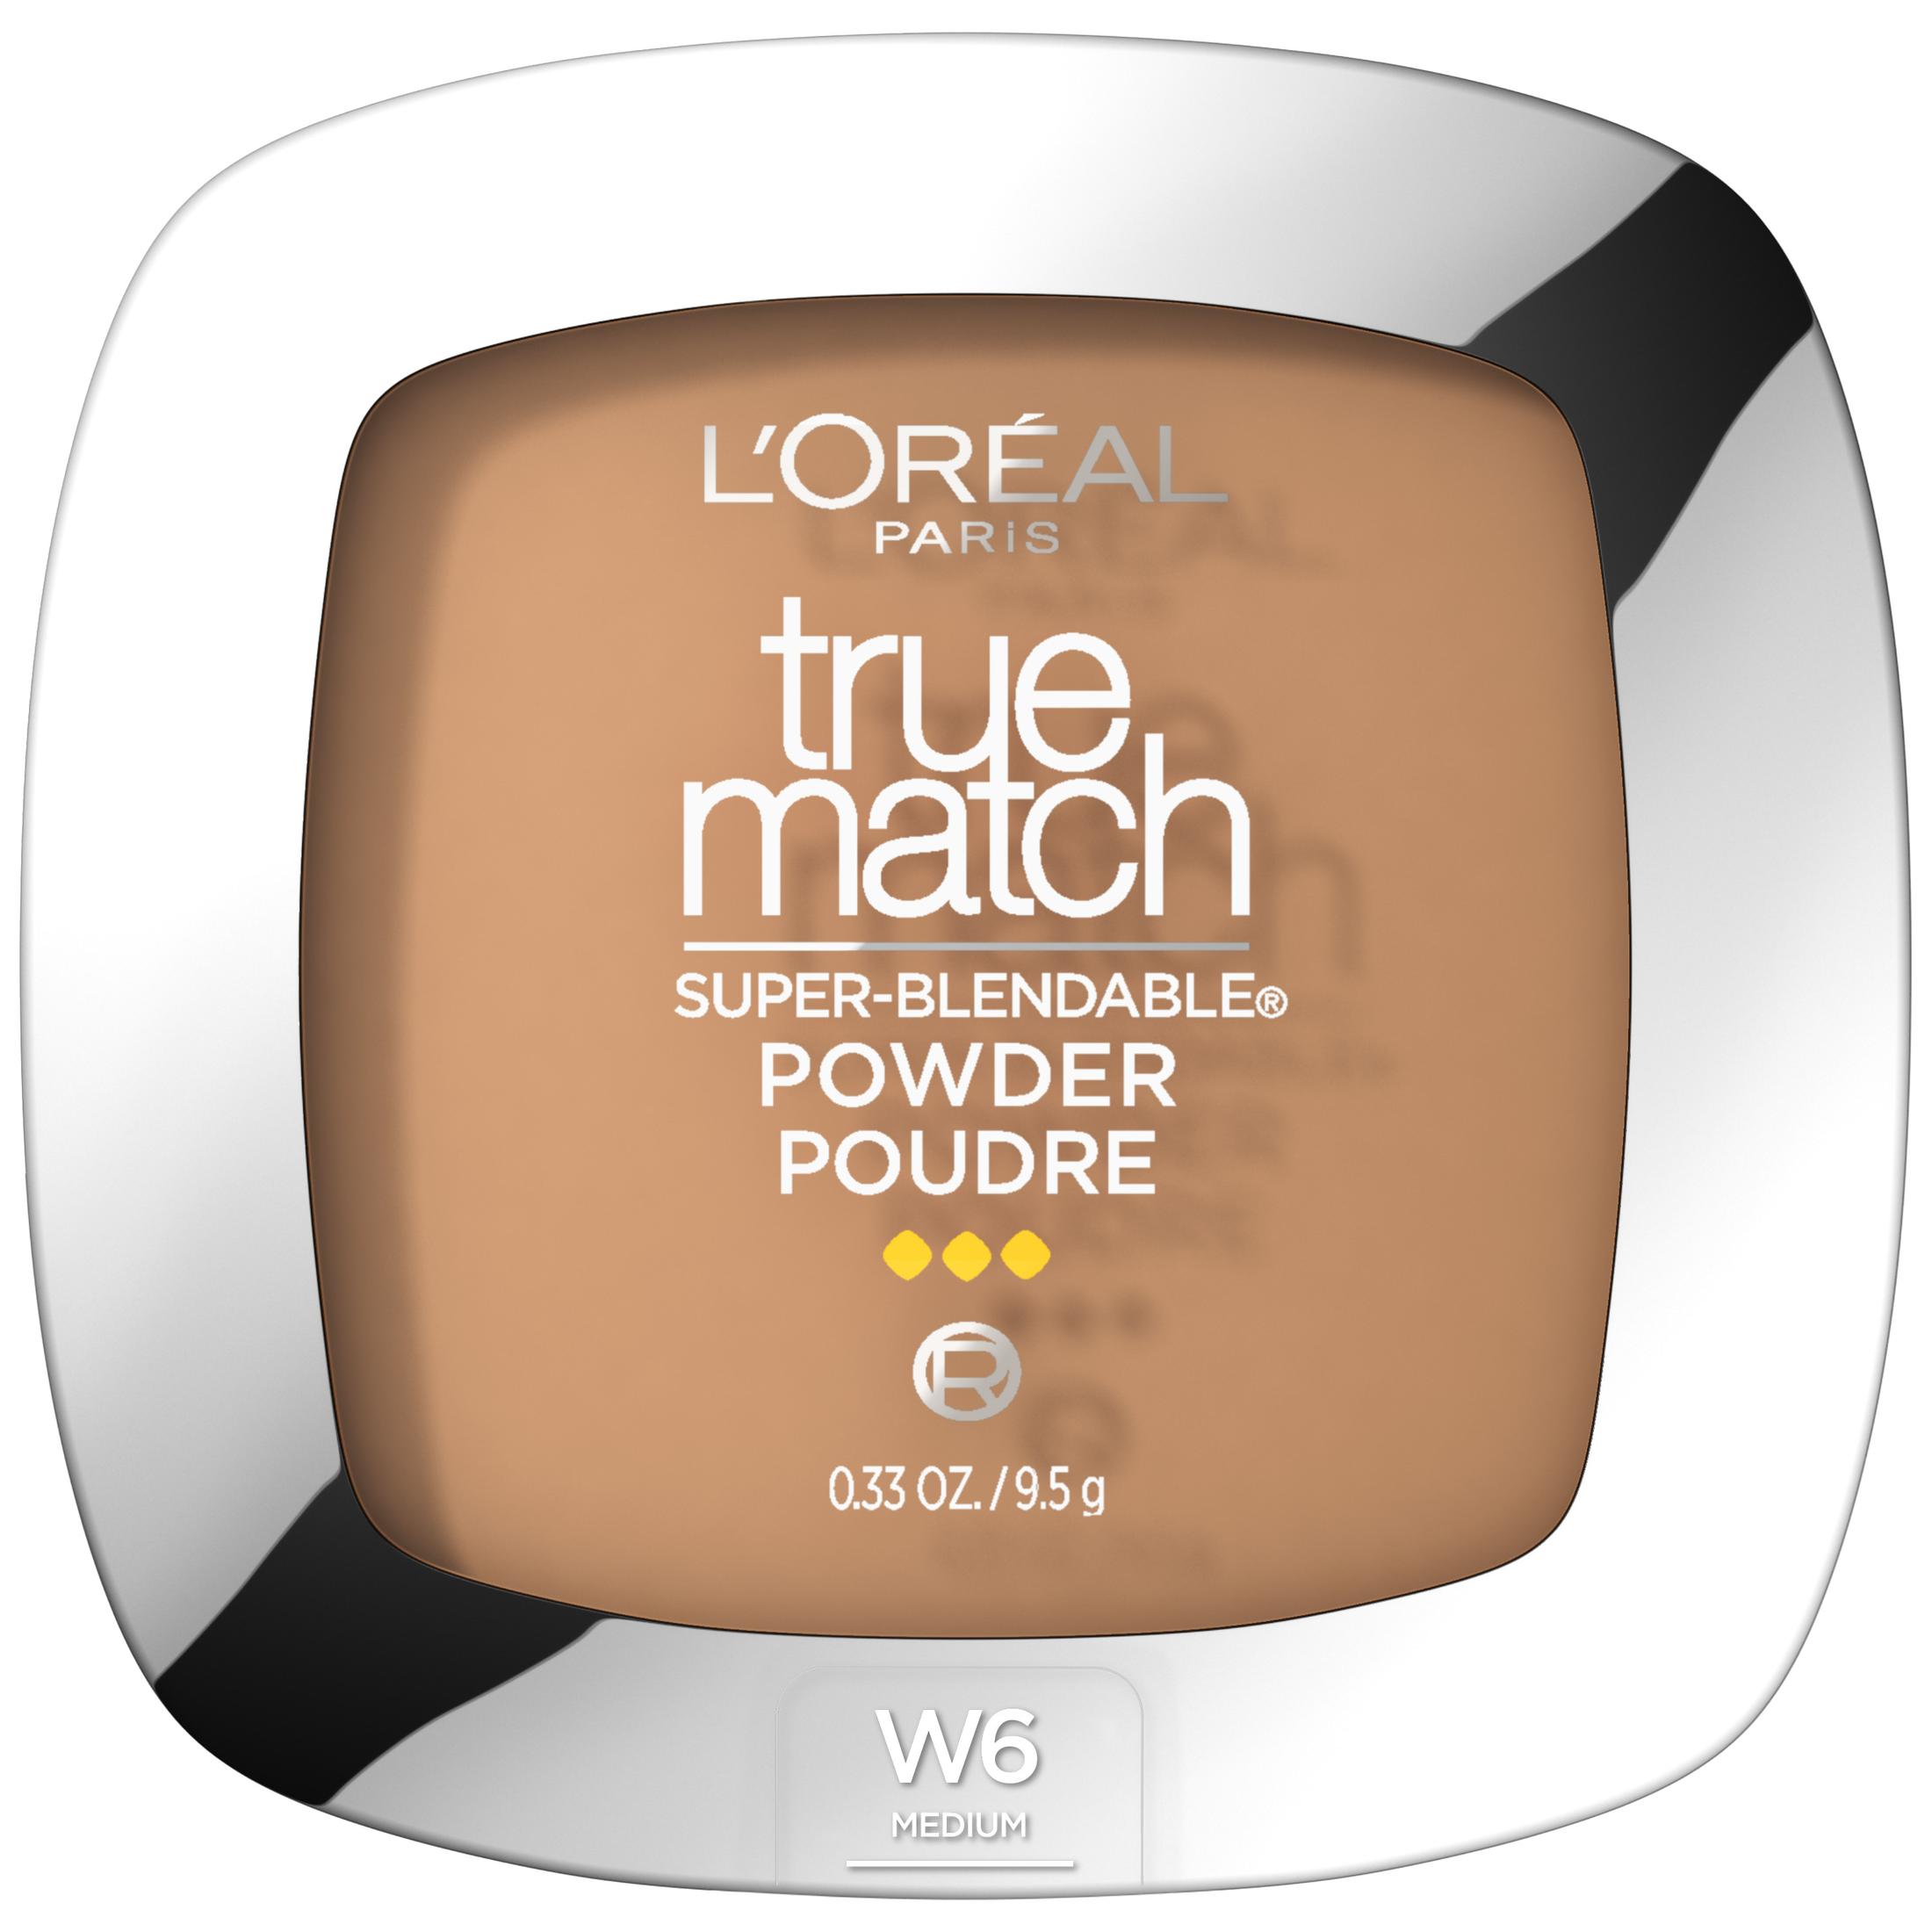 L'Oreal Paris True Match Super Blendable Oil Free Makeup Powder, Sun Beige, 0.33 oz - image 1 of 7